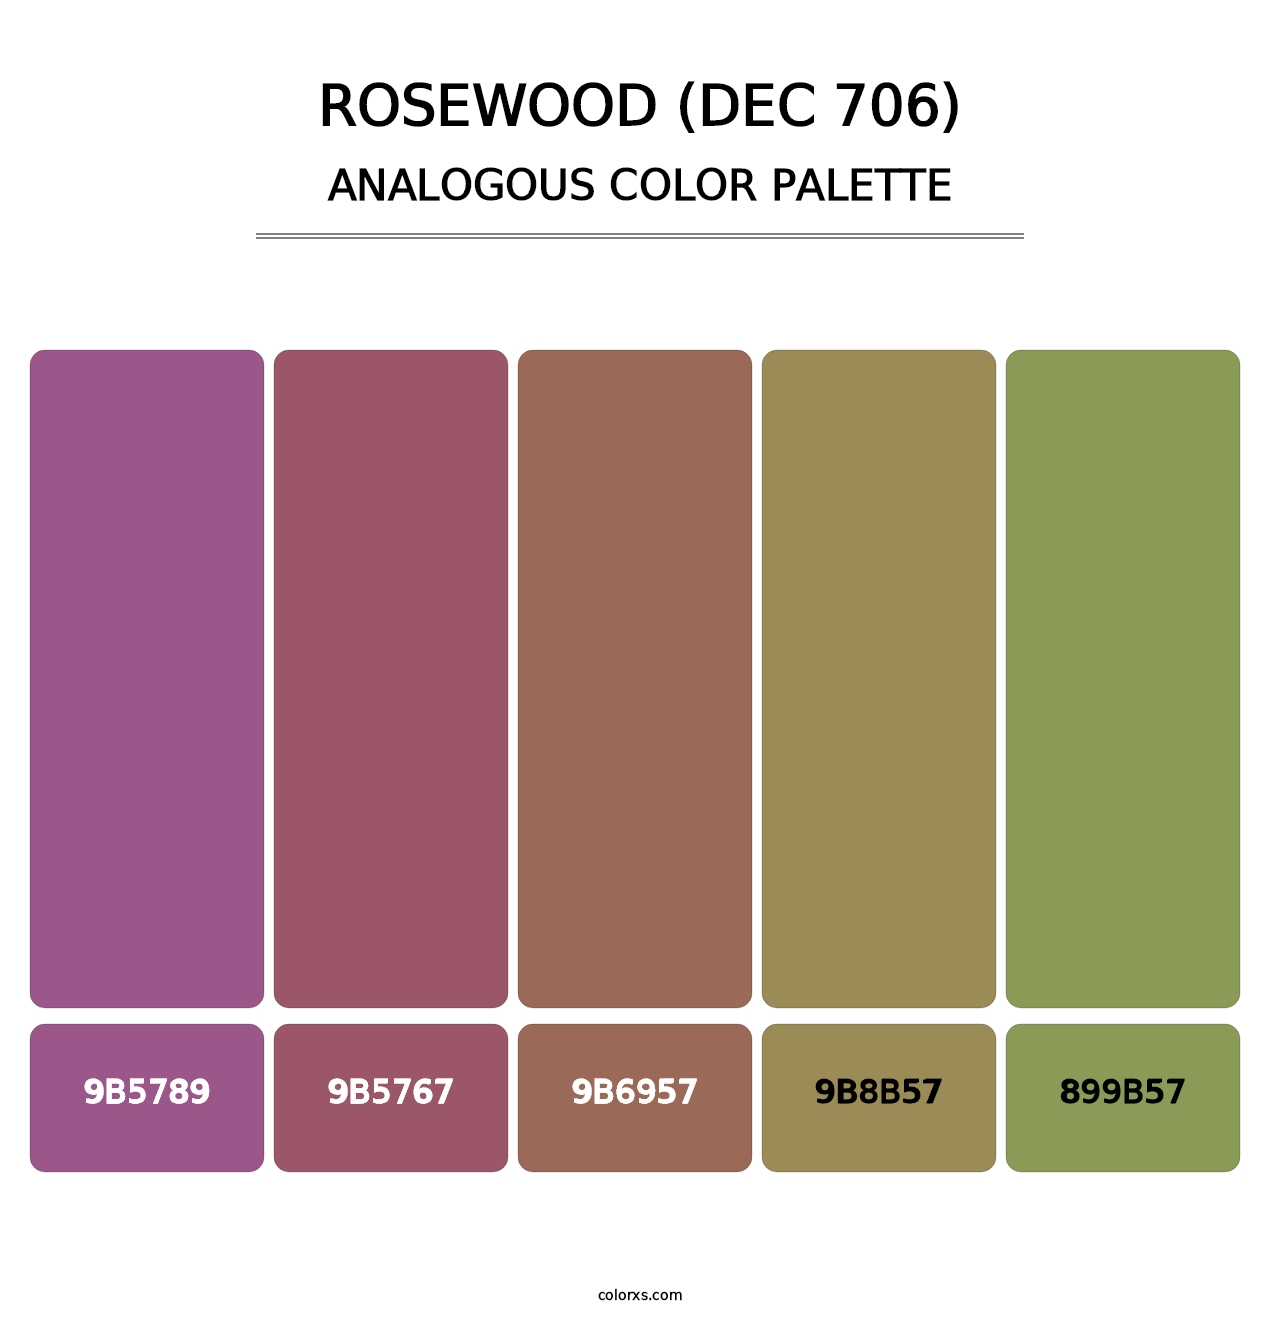 Rosewood (DEC 706) - Analogous Color Palette